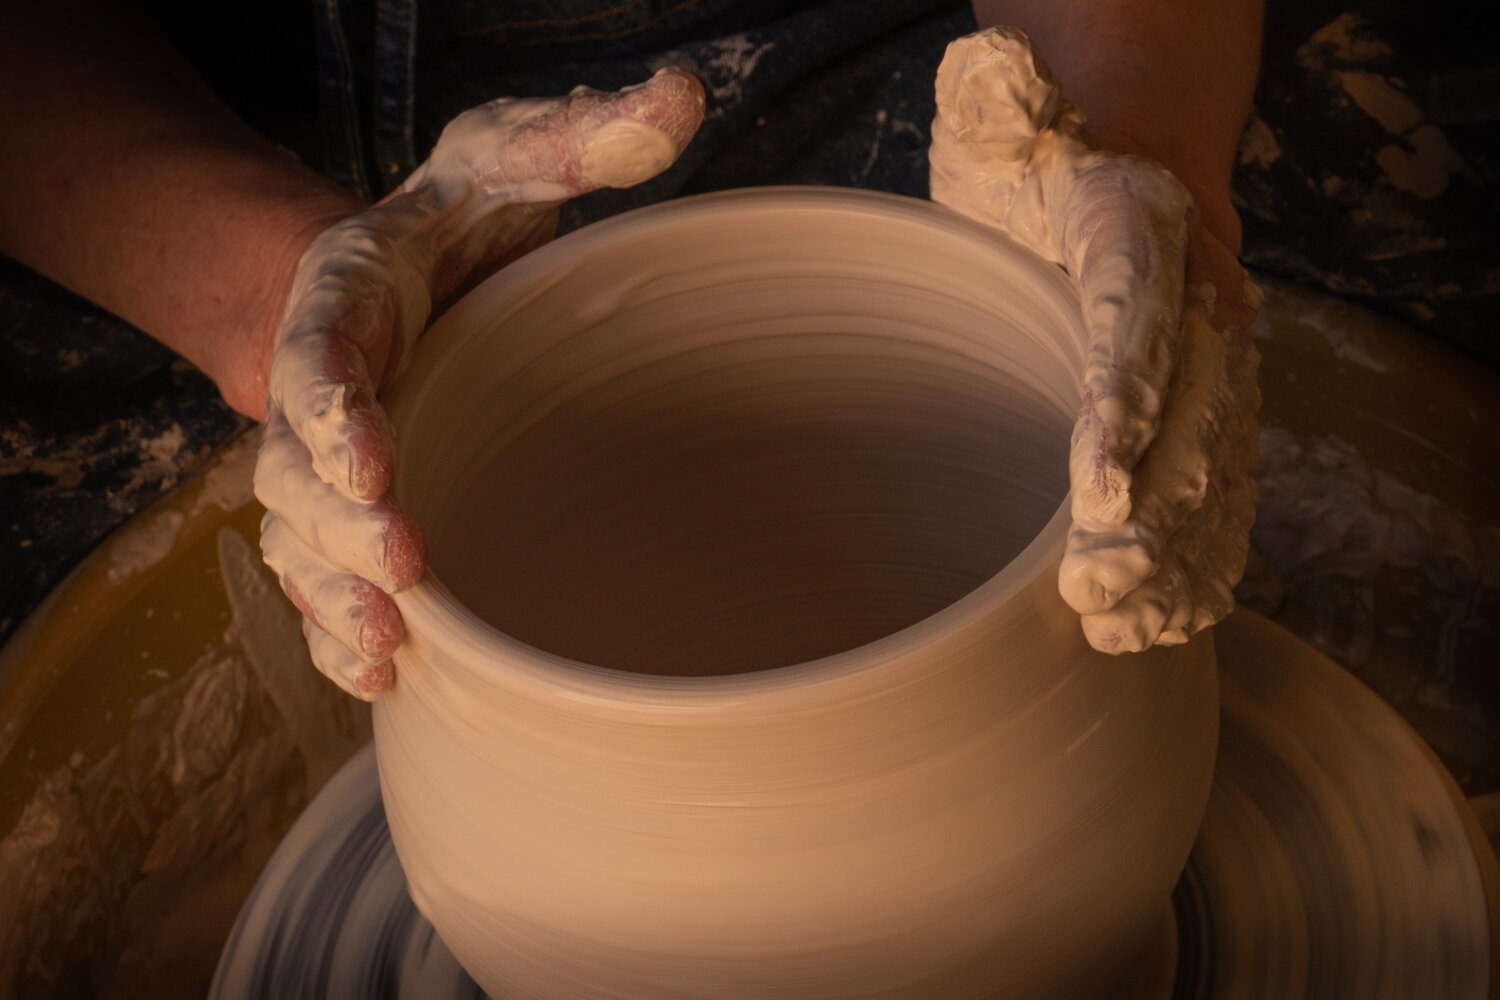 Фото изготовления глиняной вазы